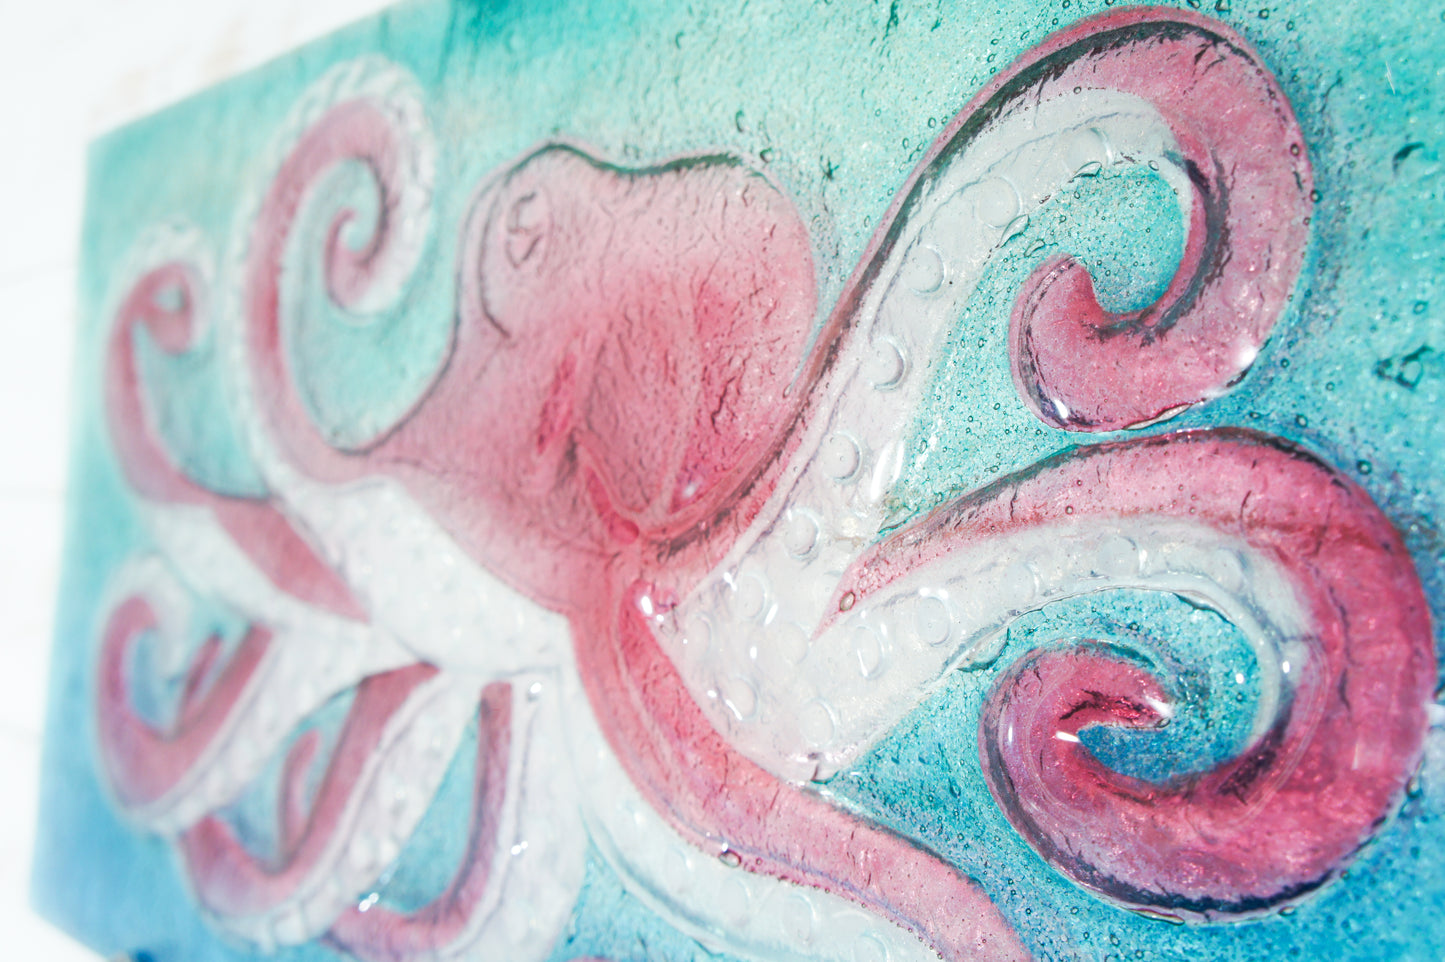 octopus glass art